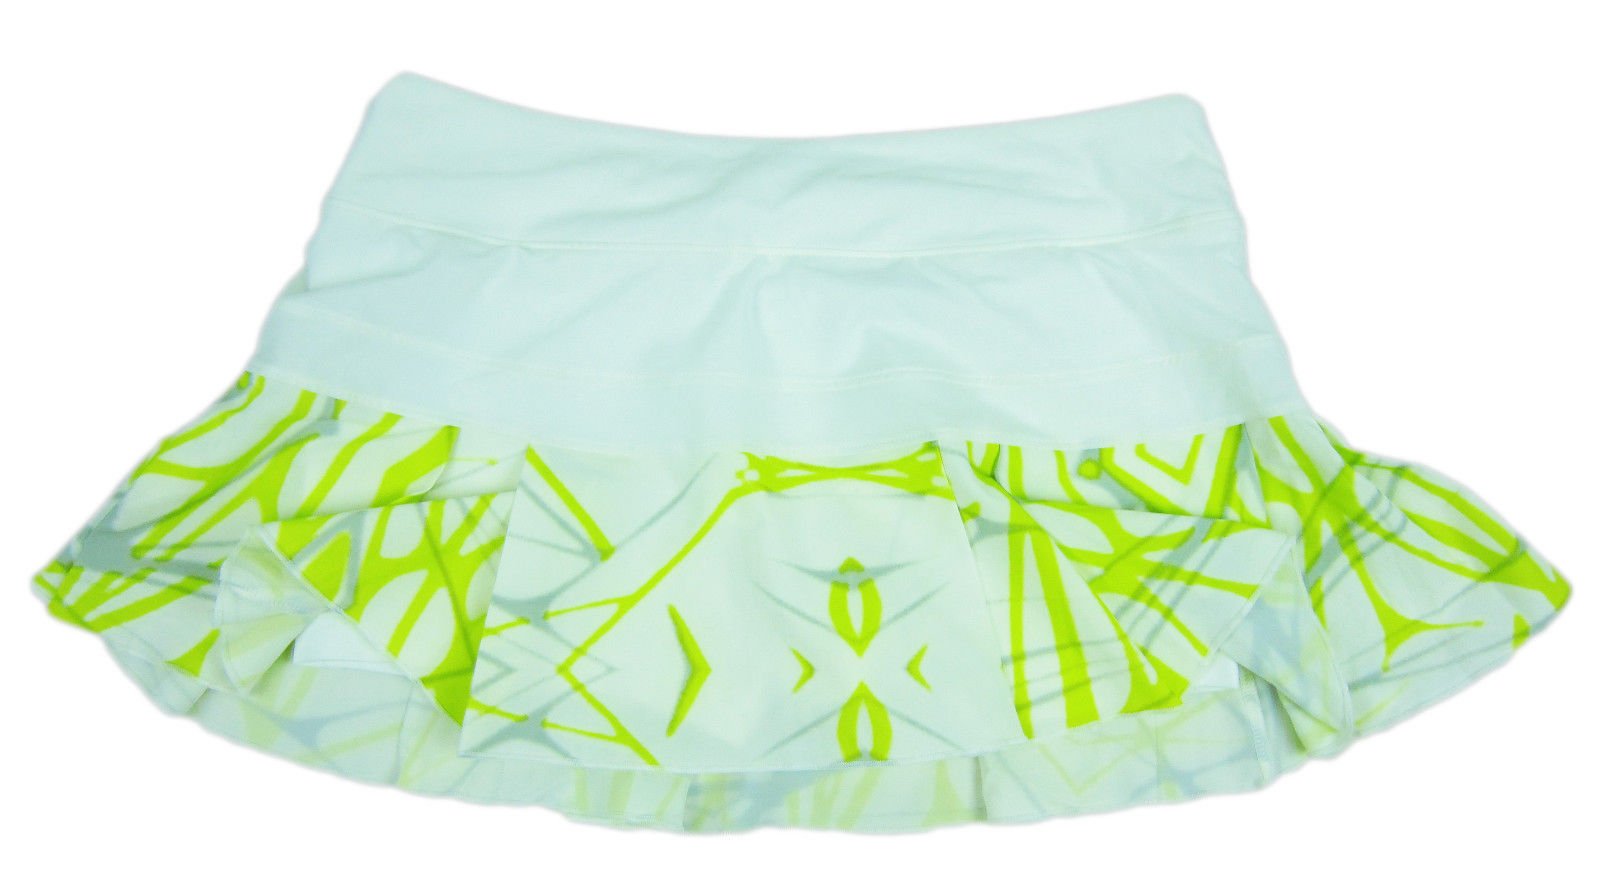 yellow nike tennis skirt